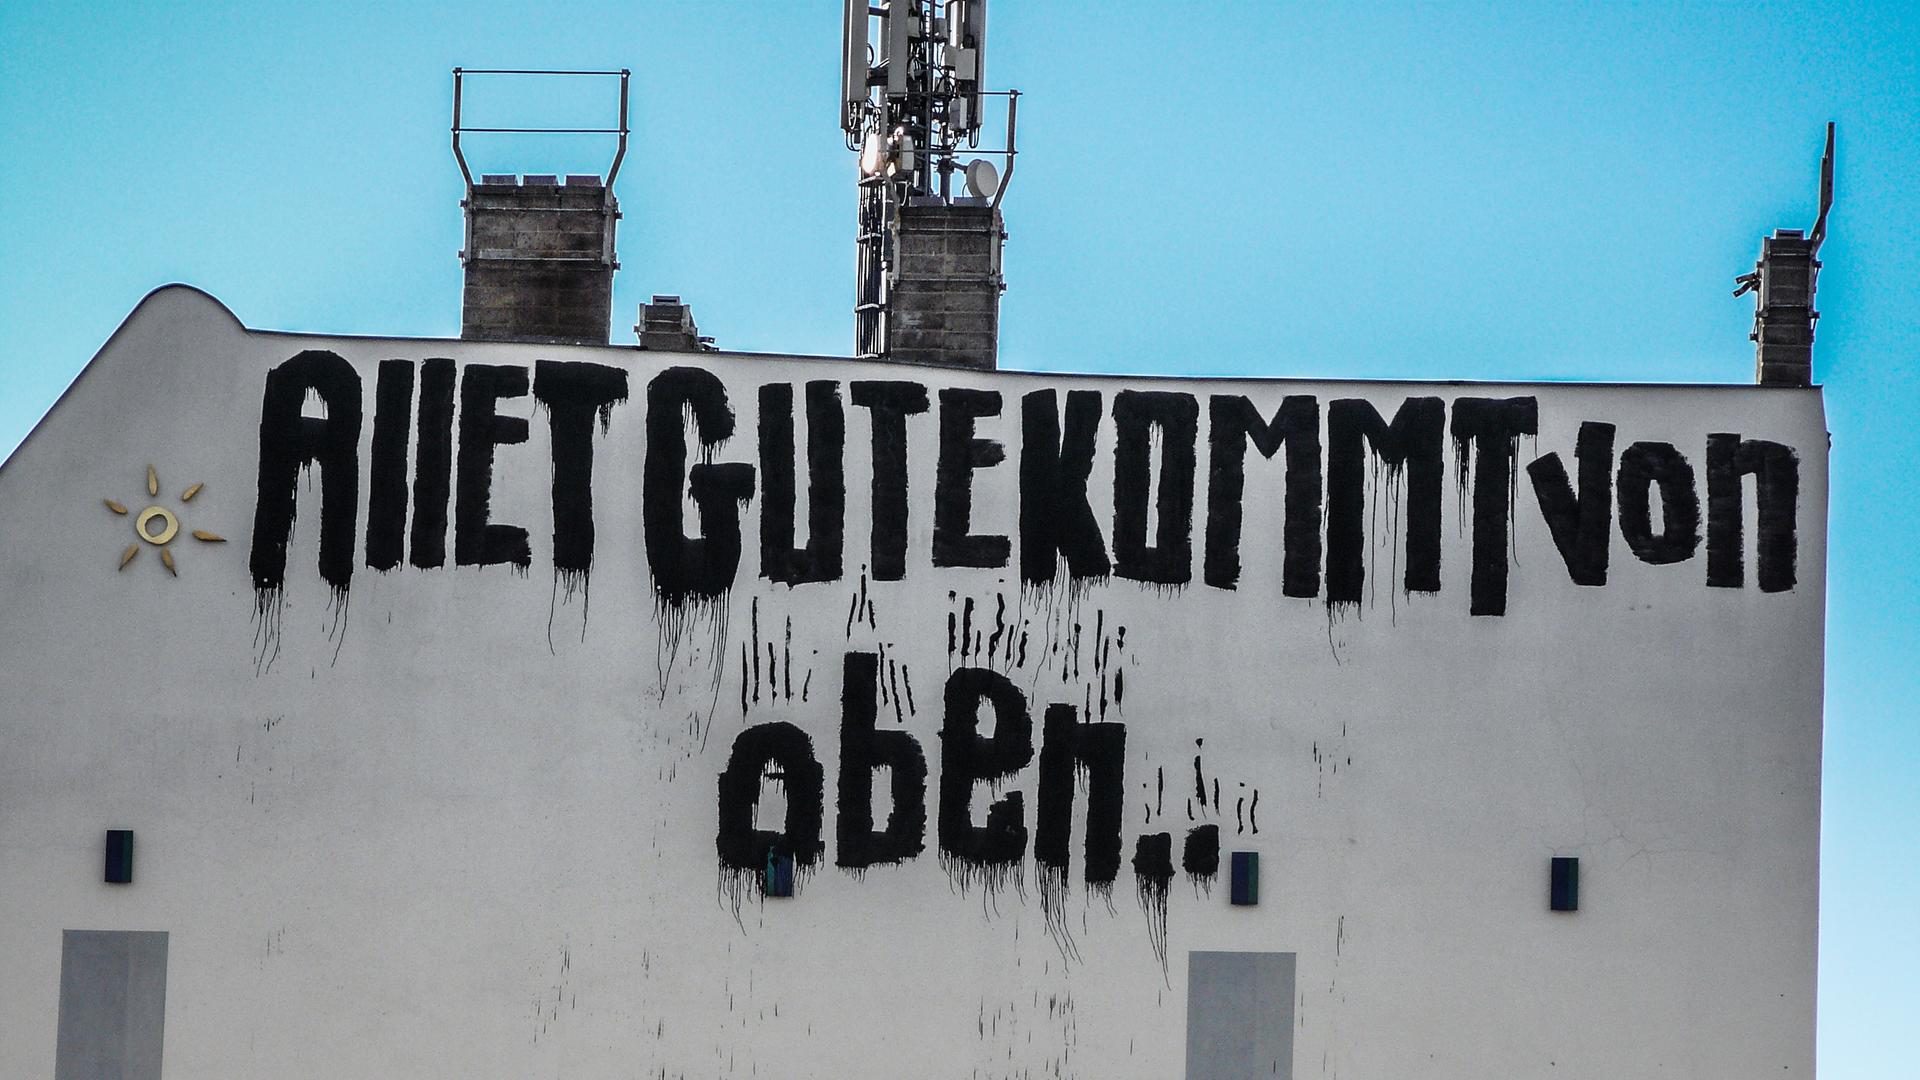 "Allet gute kommt von oben" steht auf einer Mauer in Berlin.